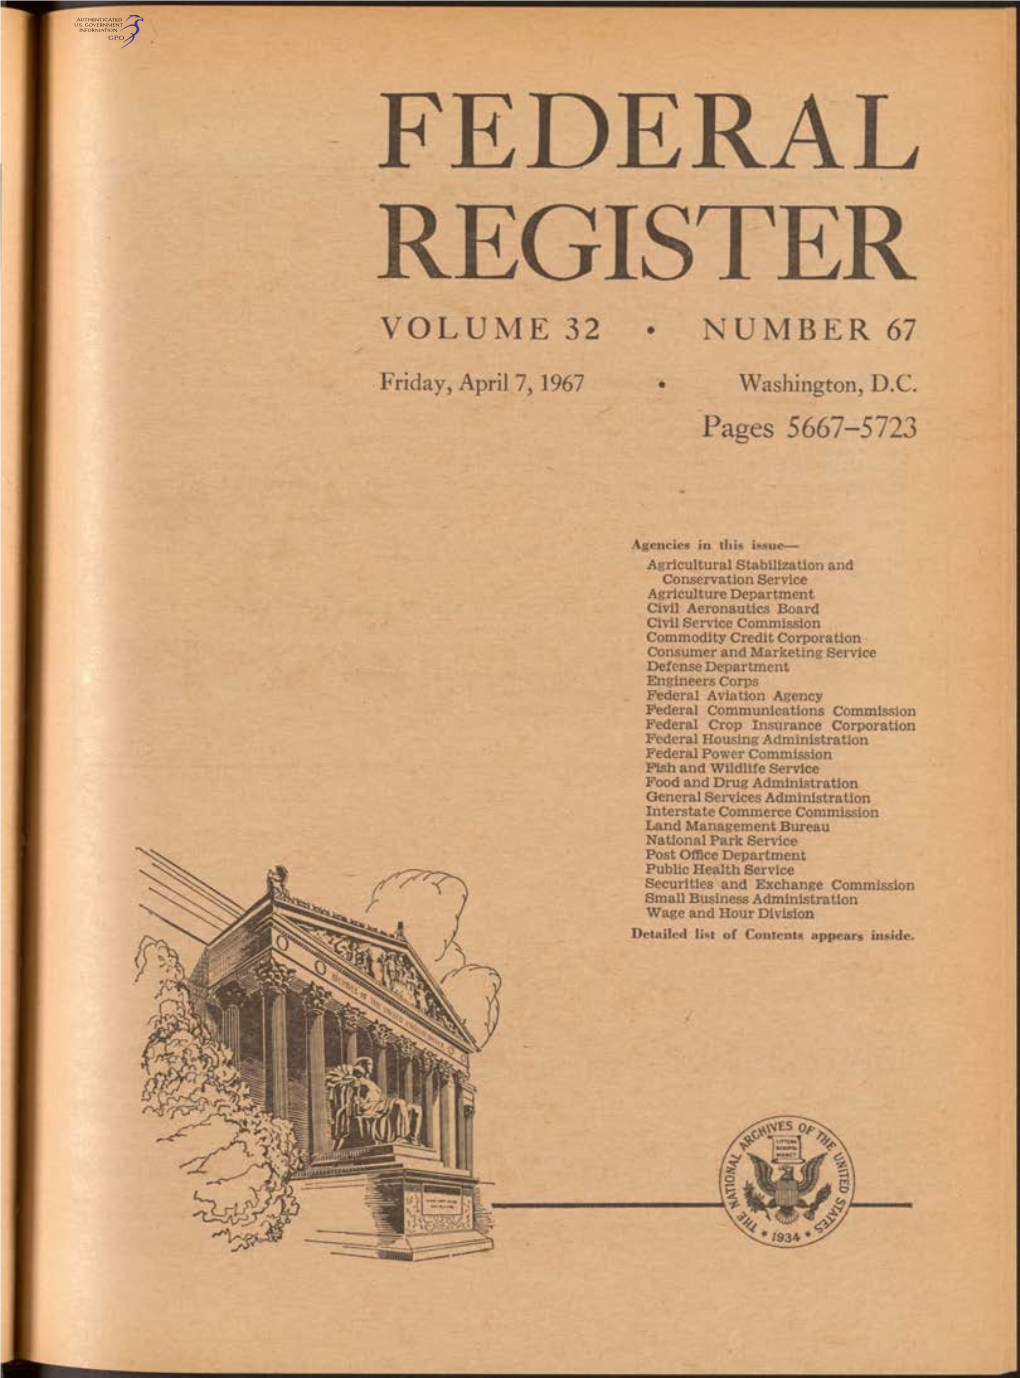 Federal Register Volume 32 • Number 67